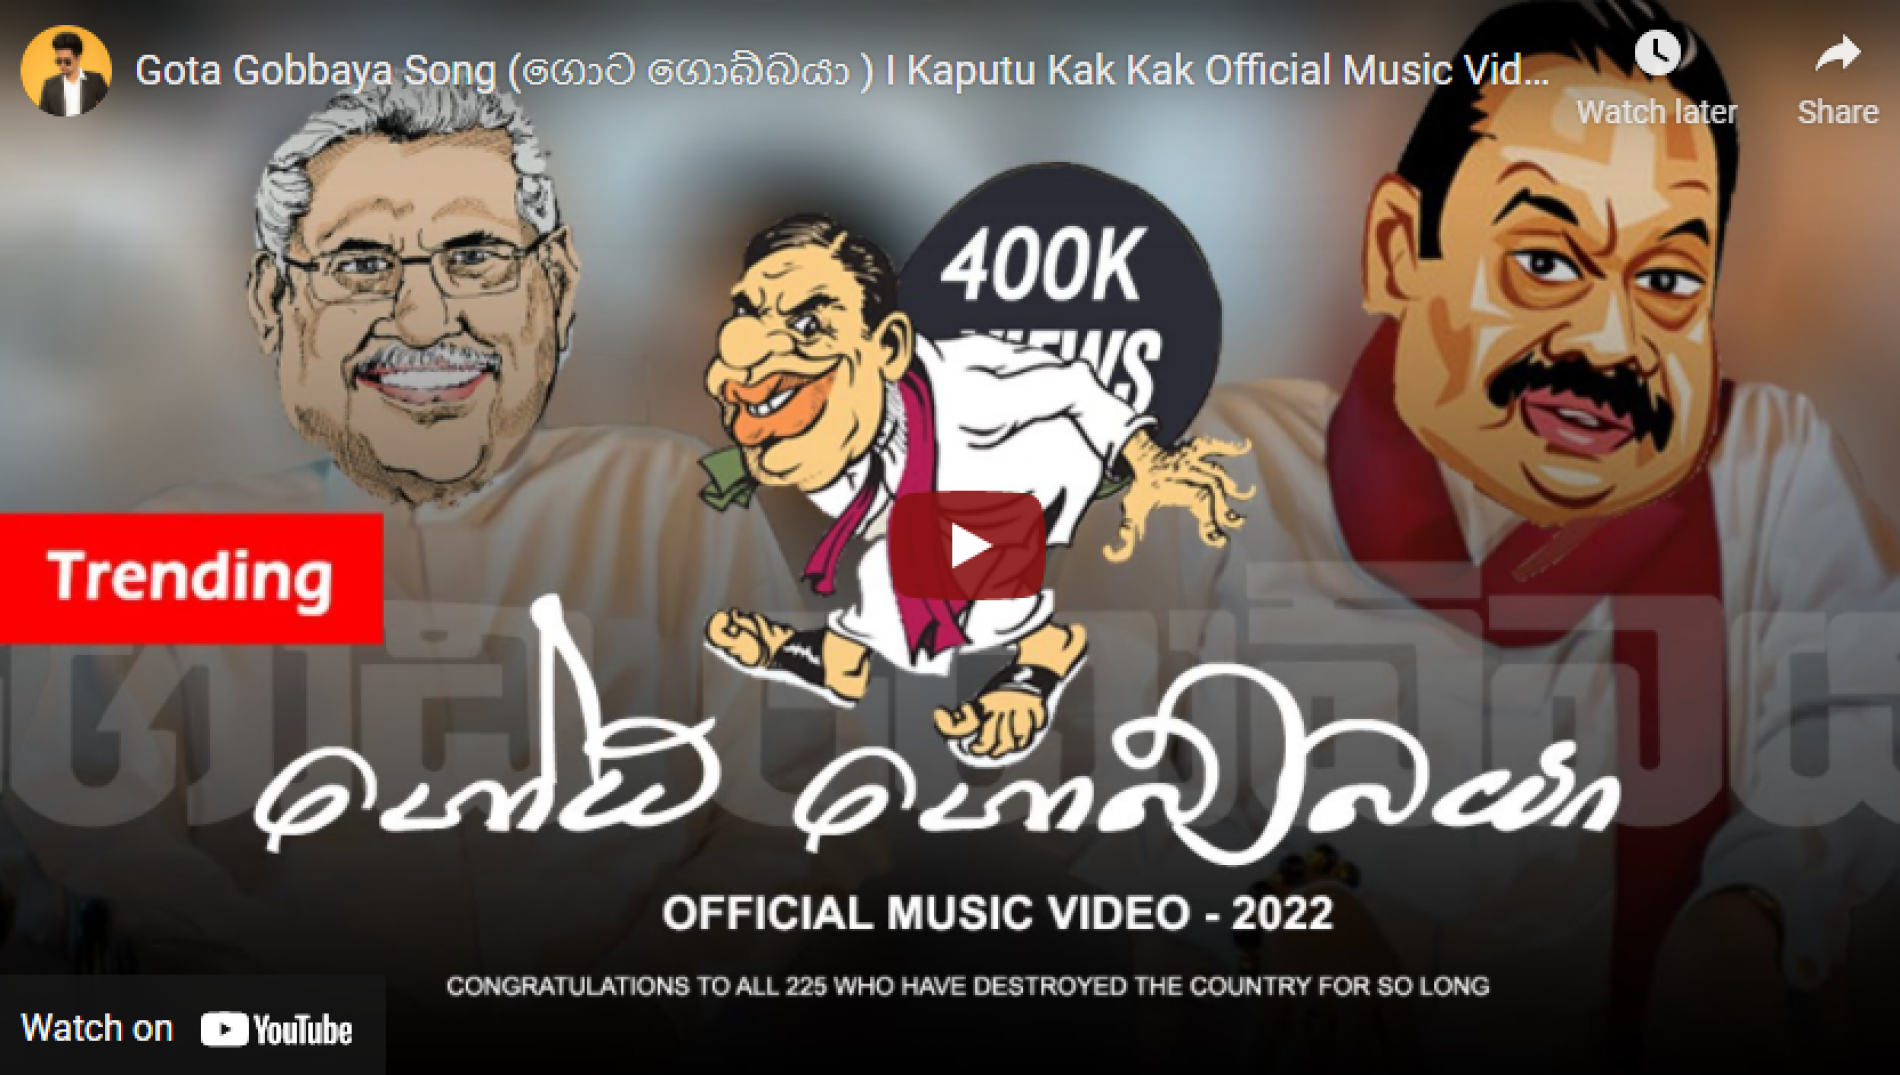 New Music : Gota Gobbaya Song (ගොට ගොබ්බයා ) I Kaputu Kak Kak Official Music Video I 2022